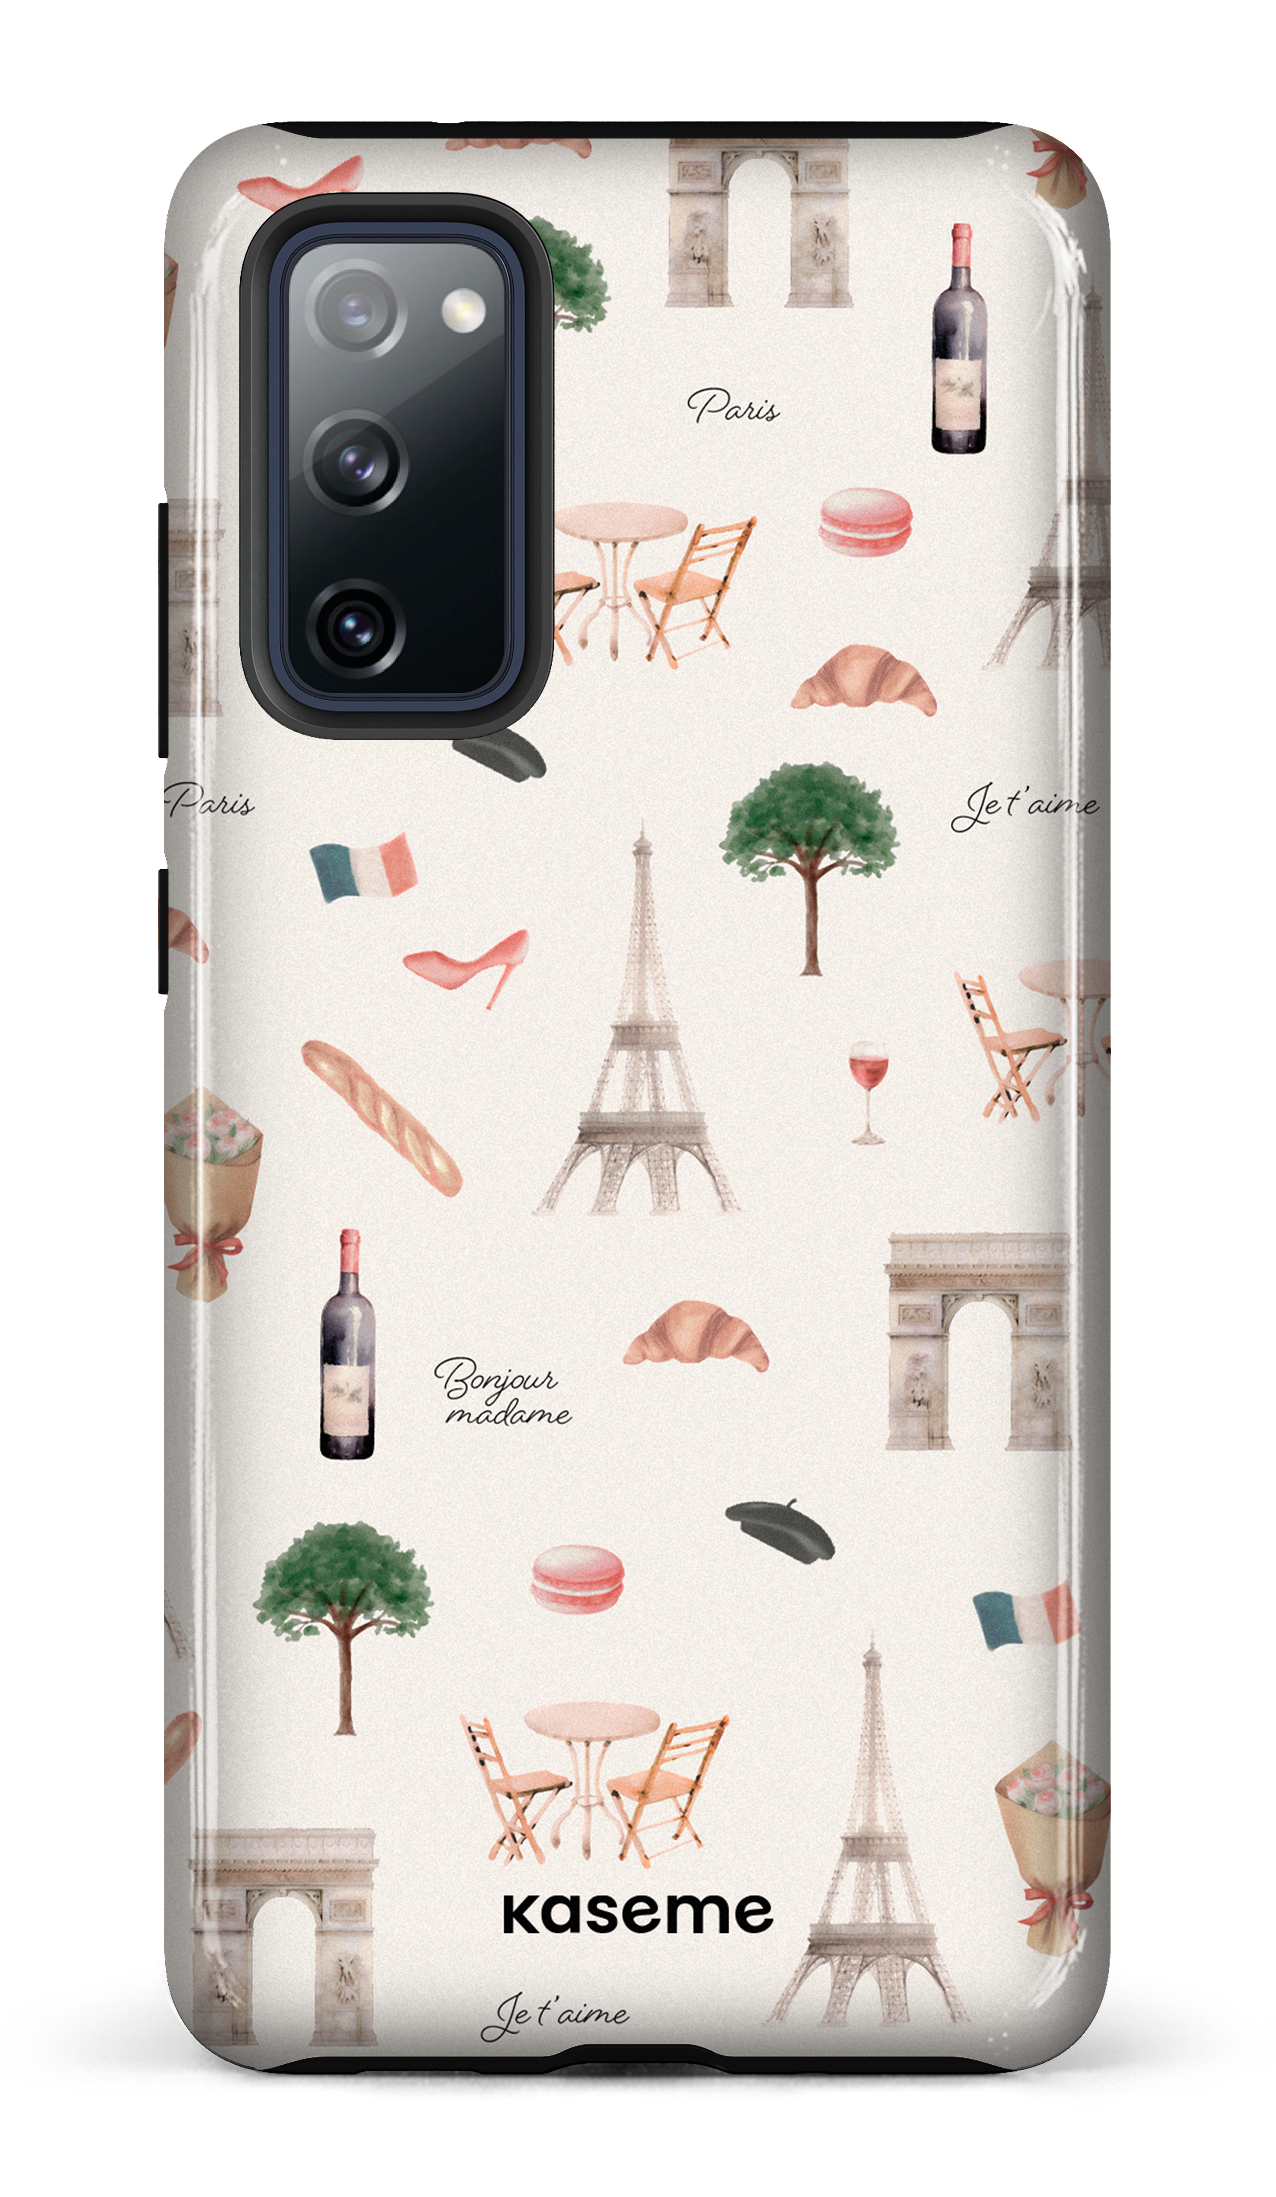 Je t'aime Paris - Galaxy S20 FE